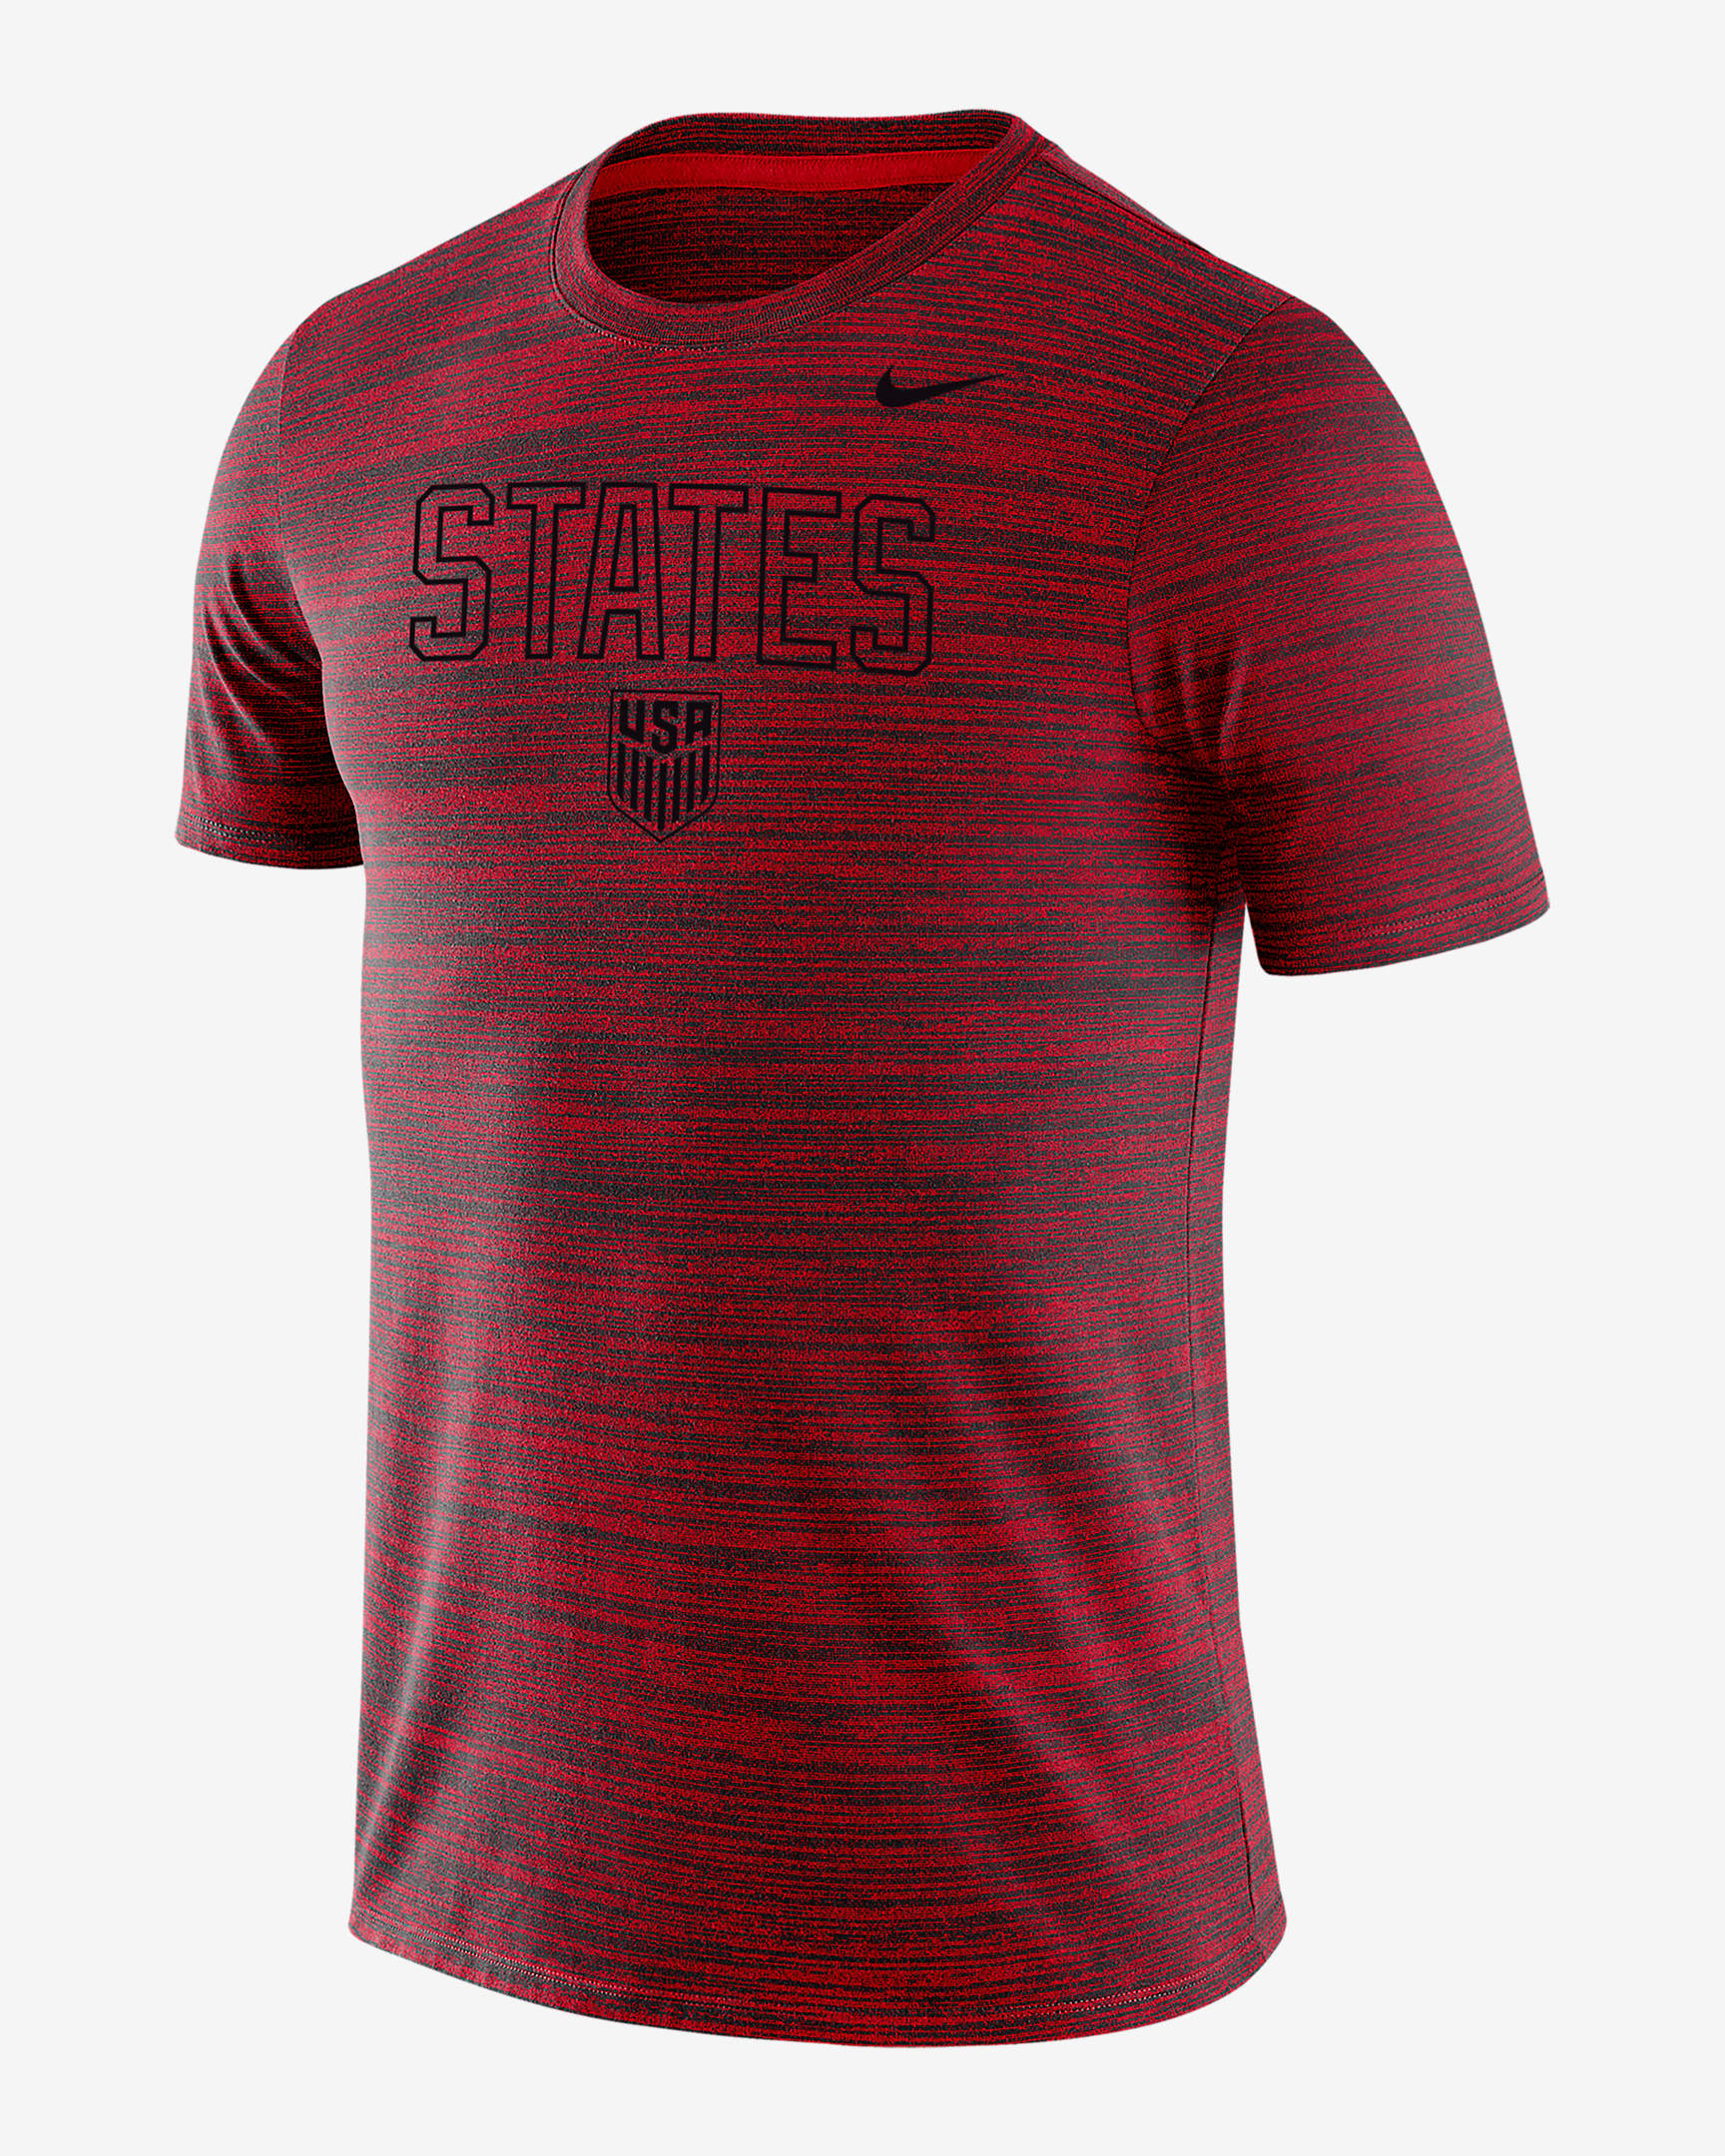 U.S. Velocity Legend Men's T-Shirt. Nike.com